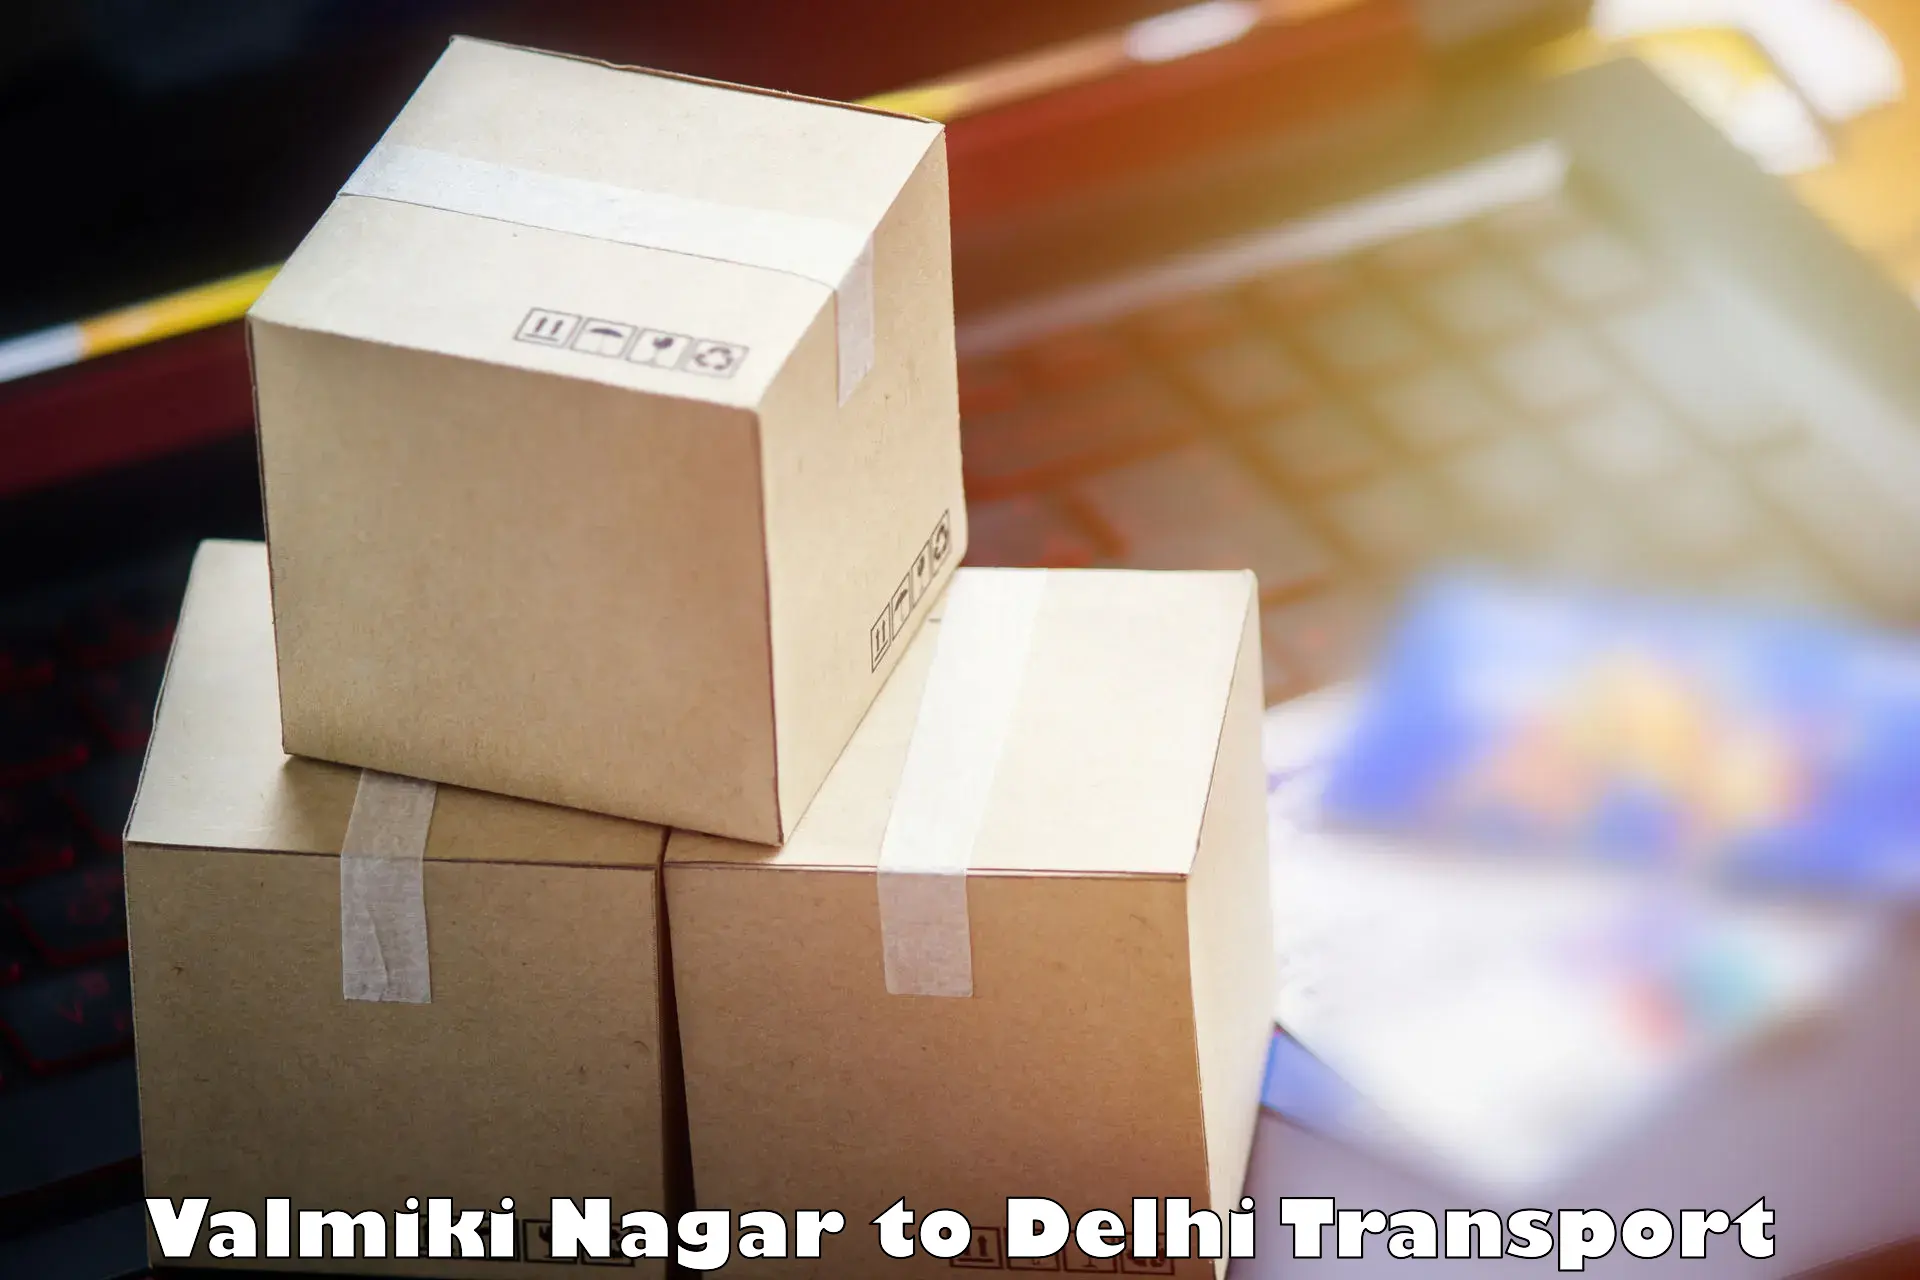 Transportation solution services Valmiki Nagar to Delhi